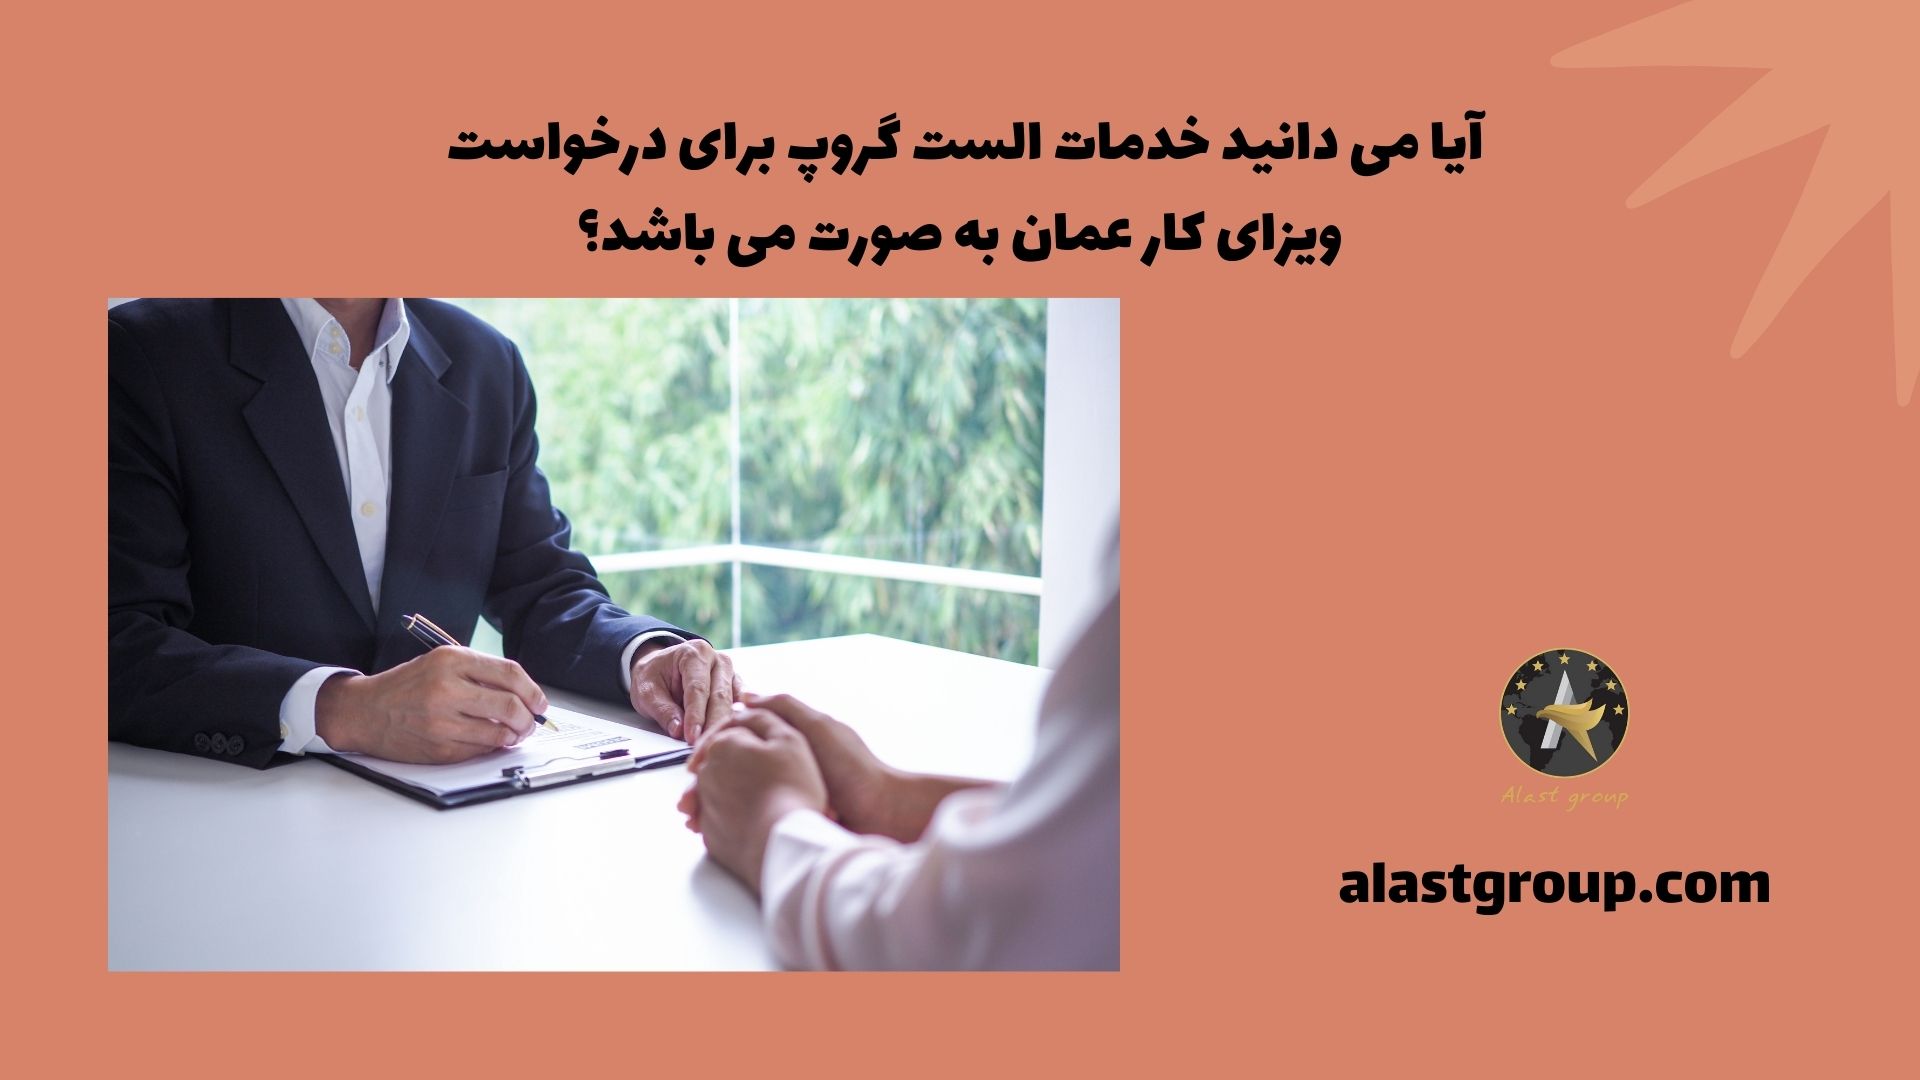 آیا می دانید خدمات کارتالا برای درخواست ویزای کار عمان به صورت می باشد؟